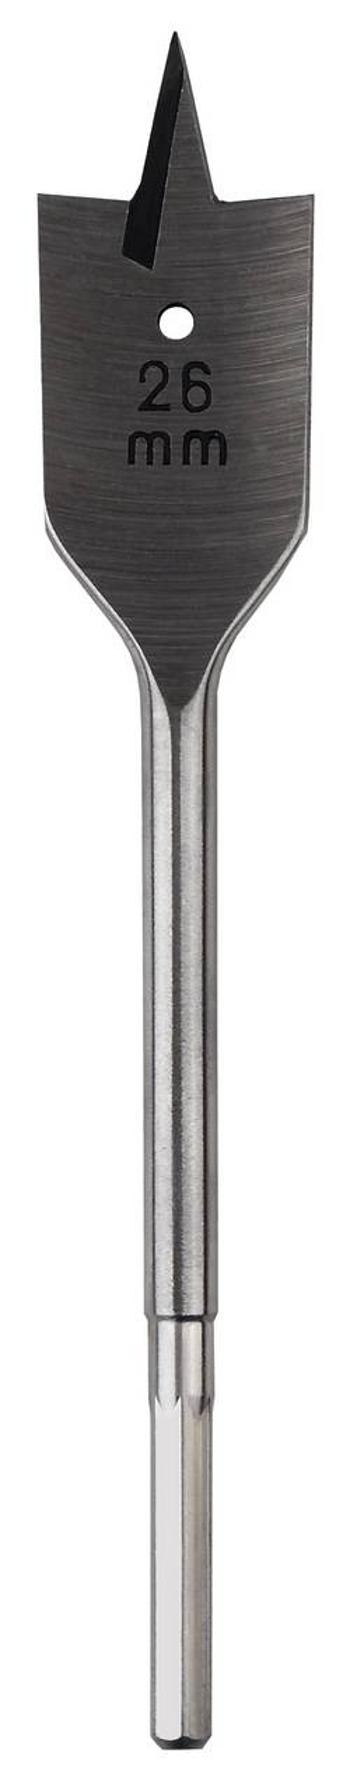 Frézovací vrták do dřeva 16 mm Celková délka 160 mm Bosch Accessories 2609255262 šestihran 1 ks